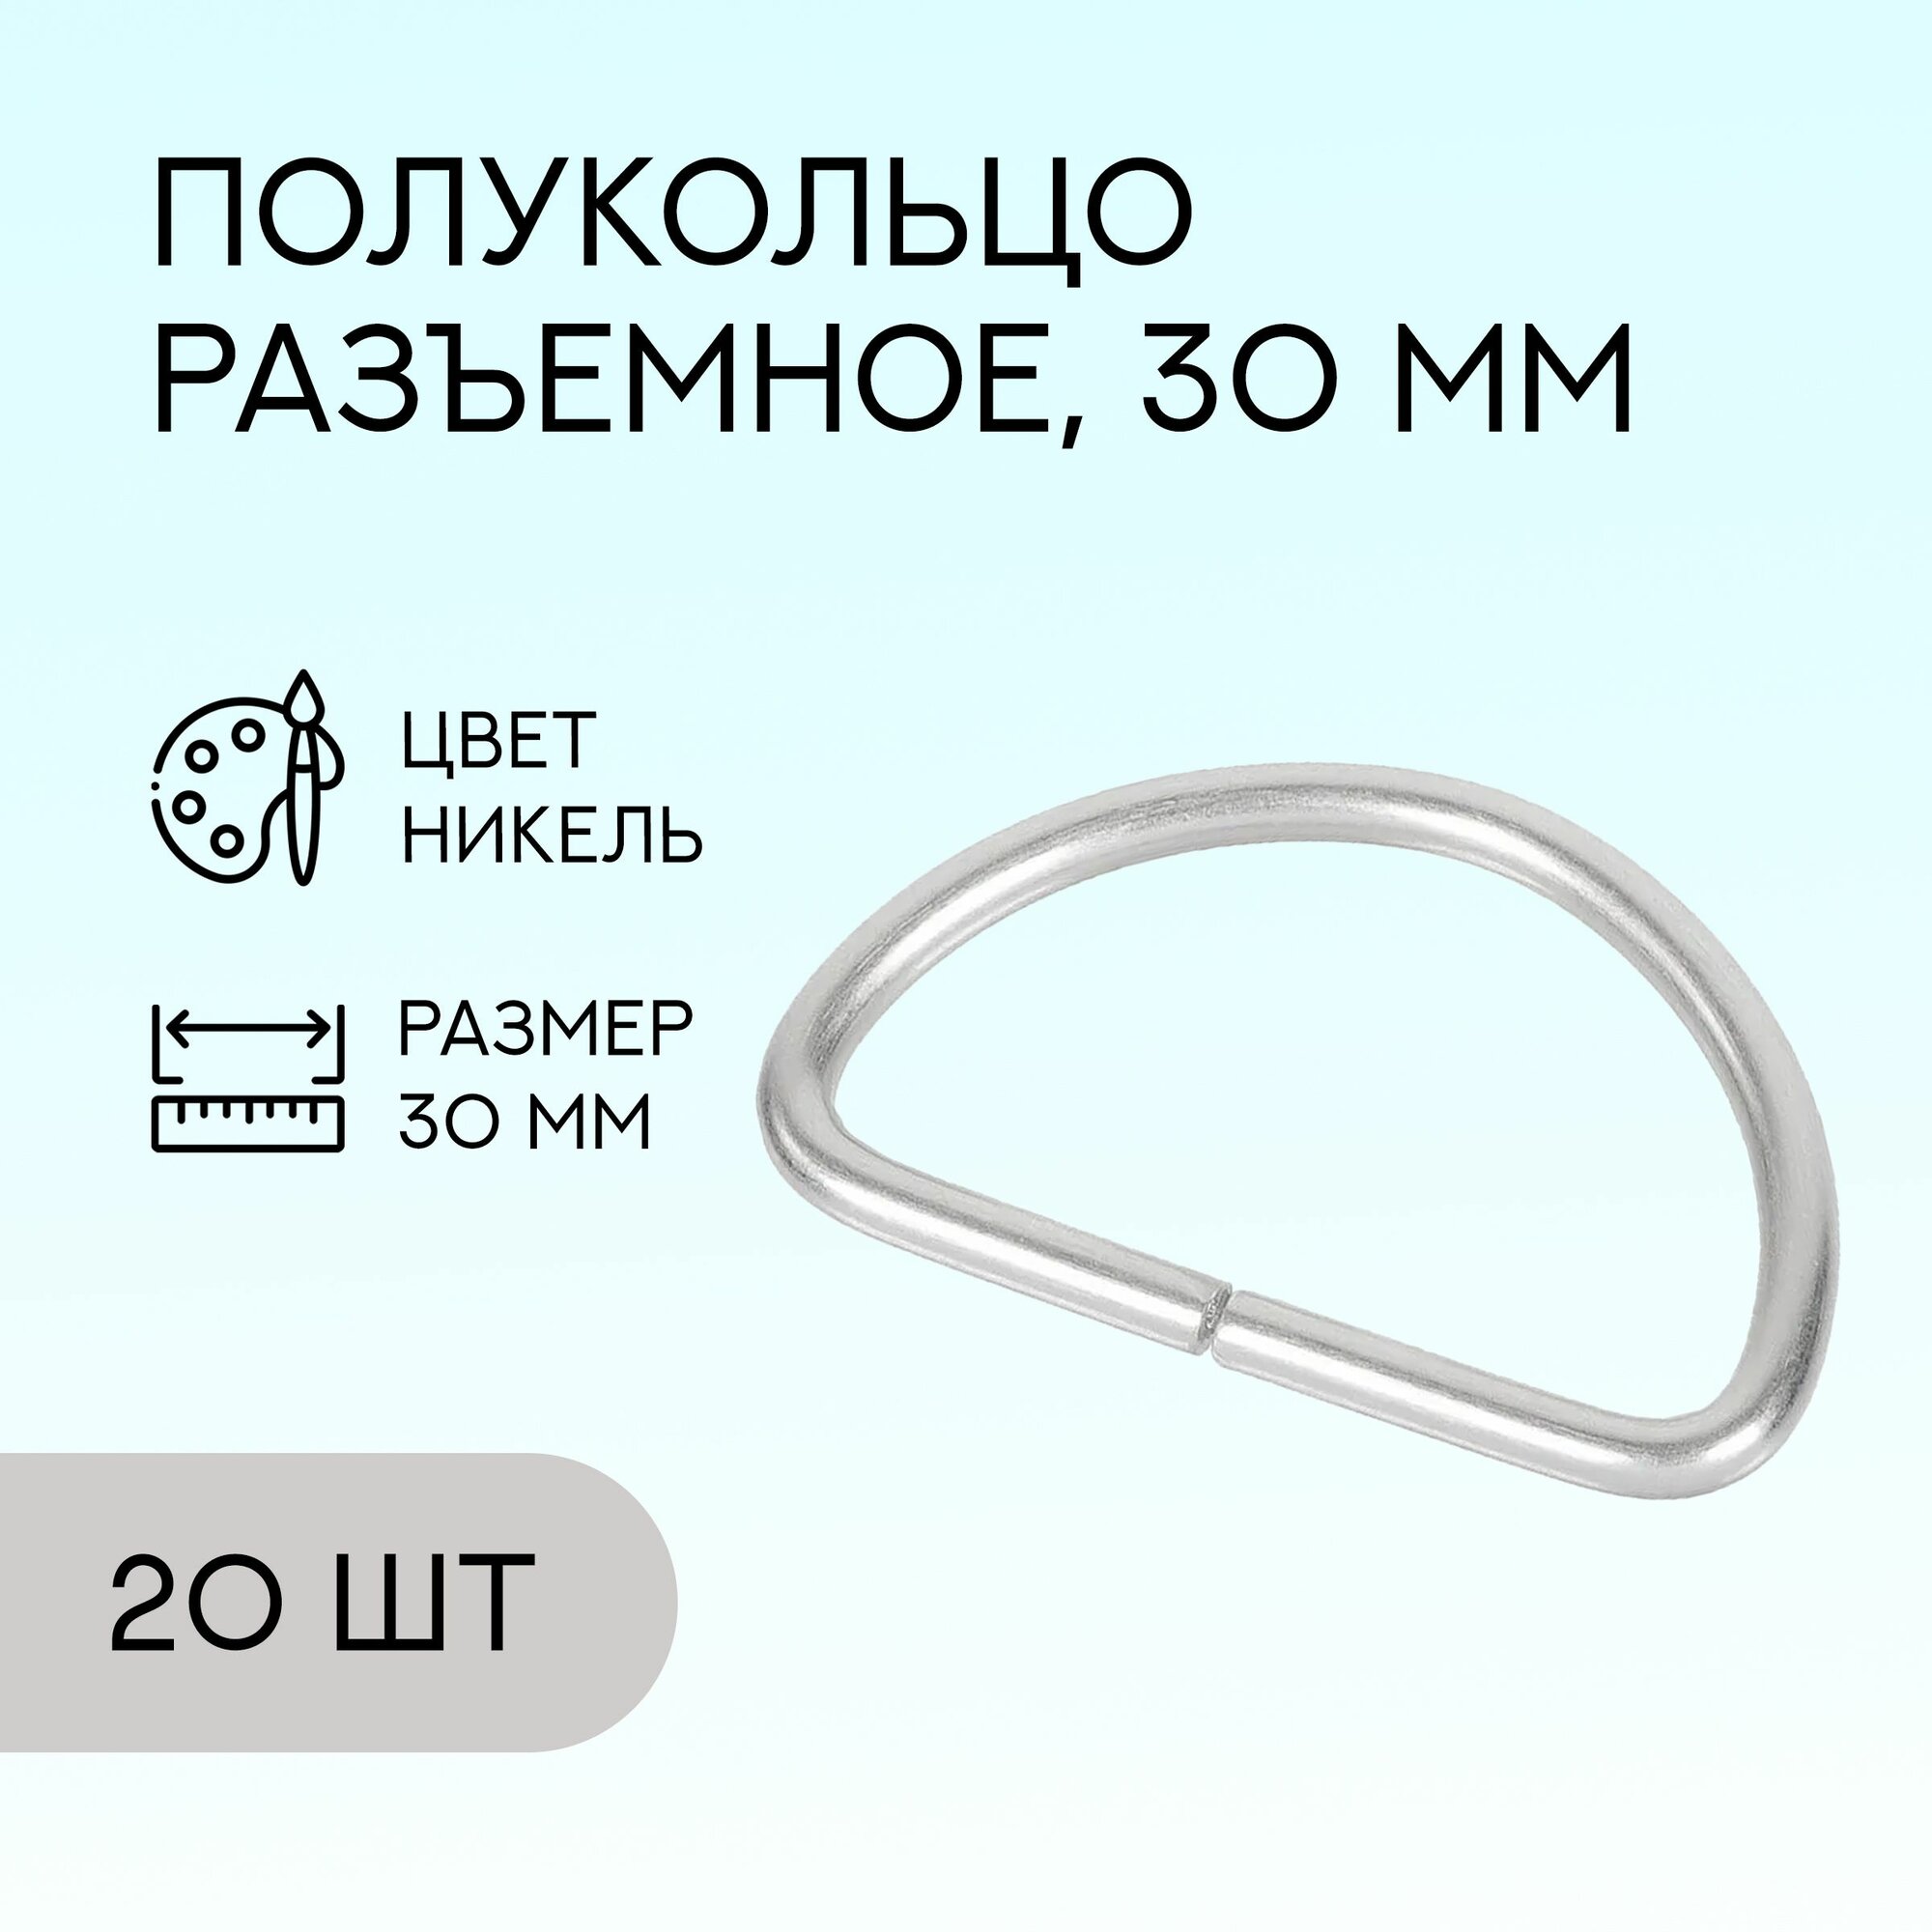 Полукольцо разъемное, 30 мм, никель, 20 шт. / кольцо для сумок и рукоделия / FG-149107_20